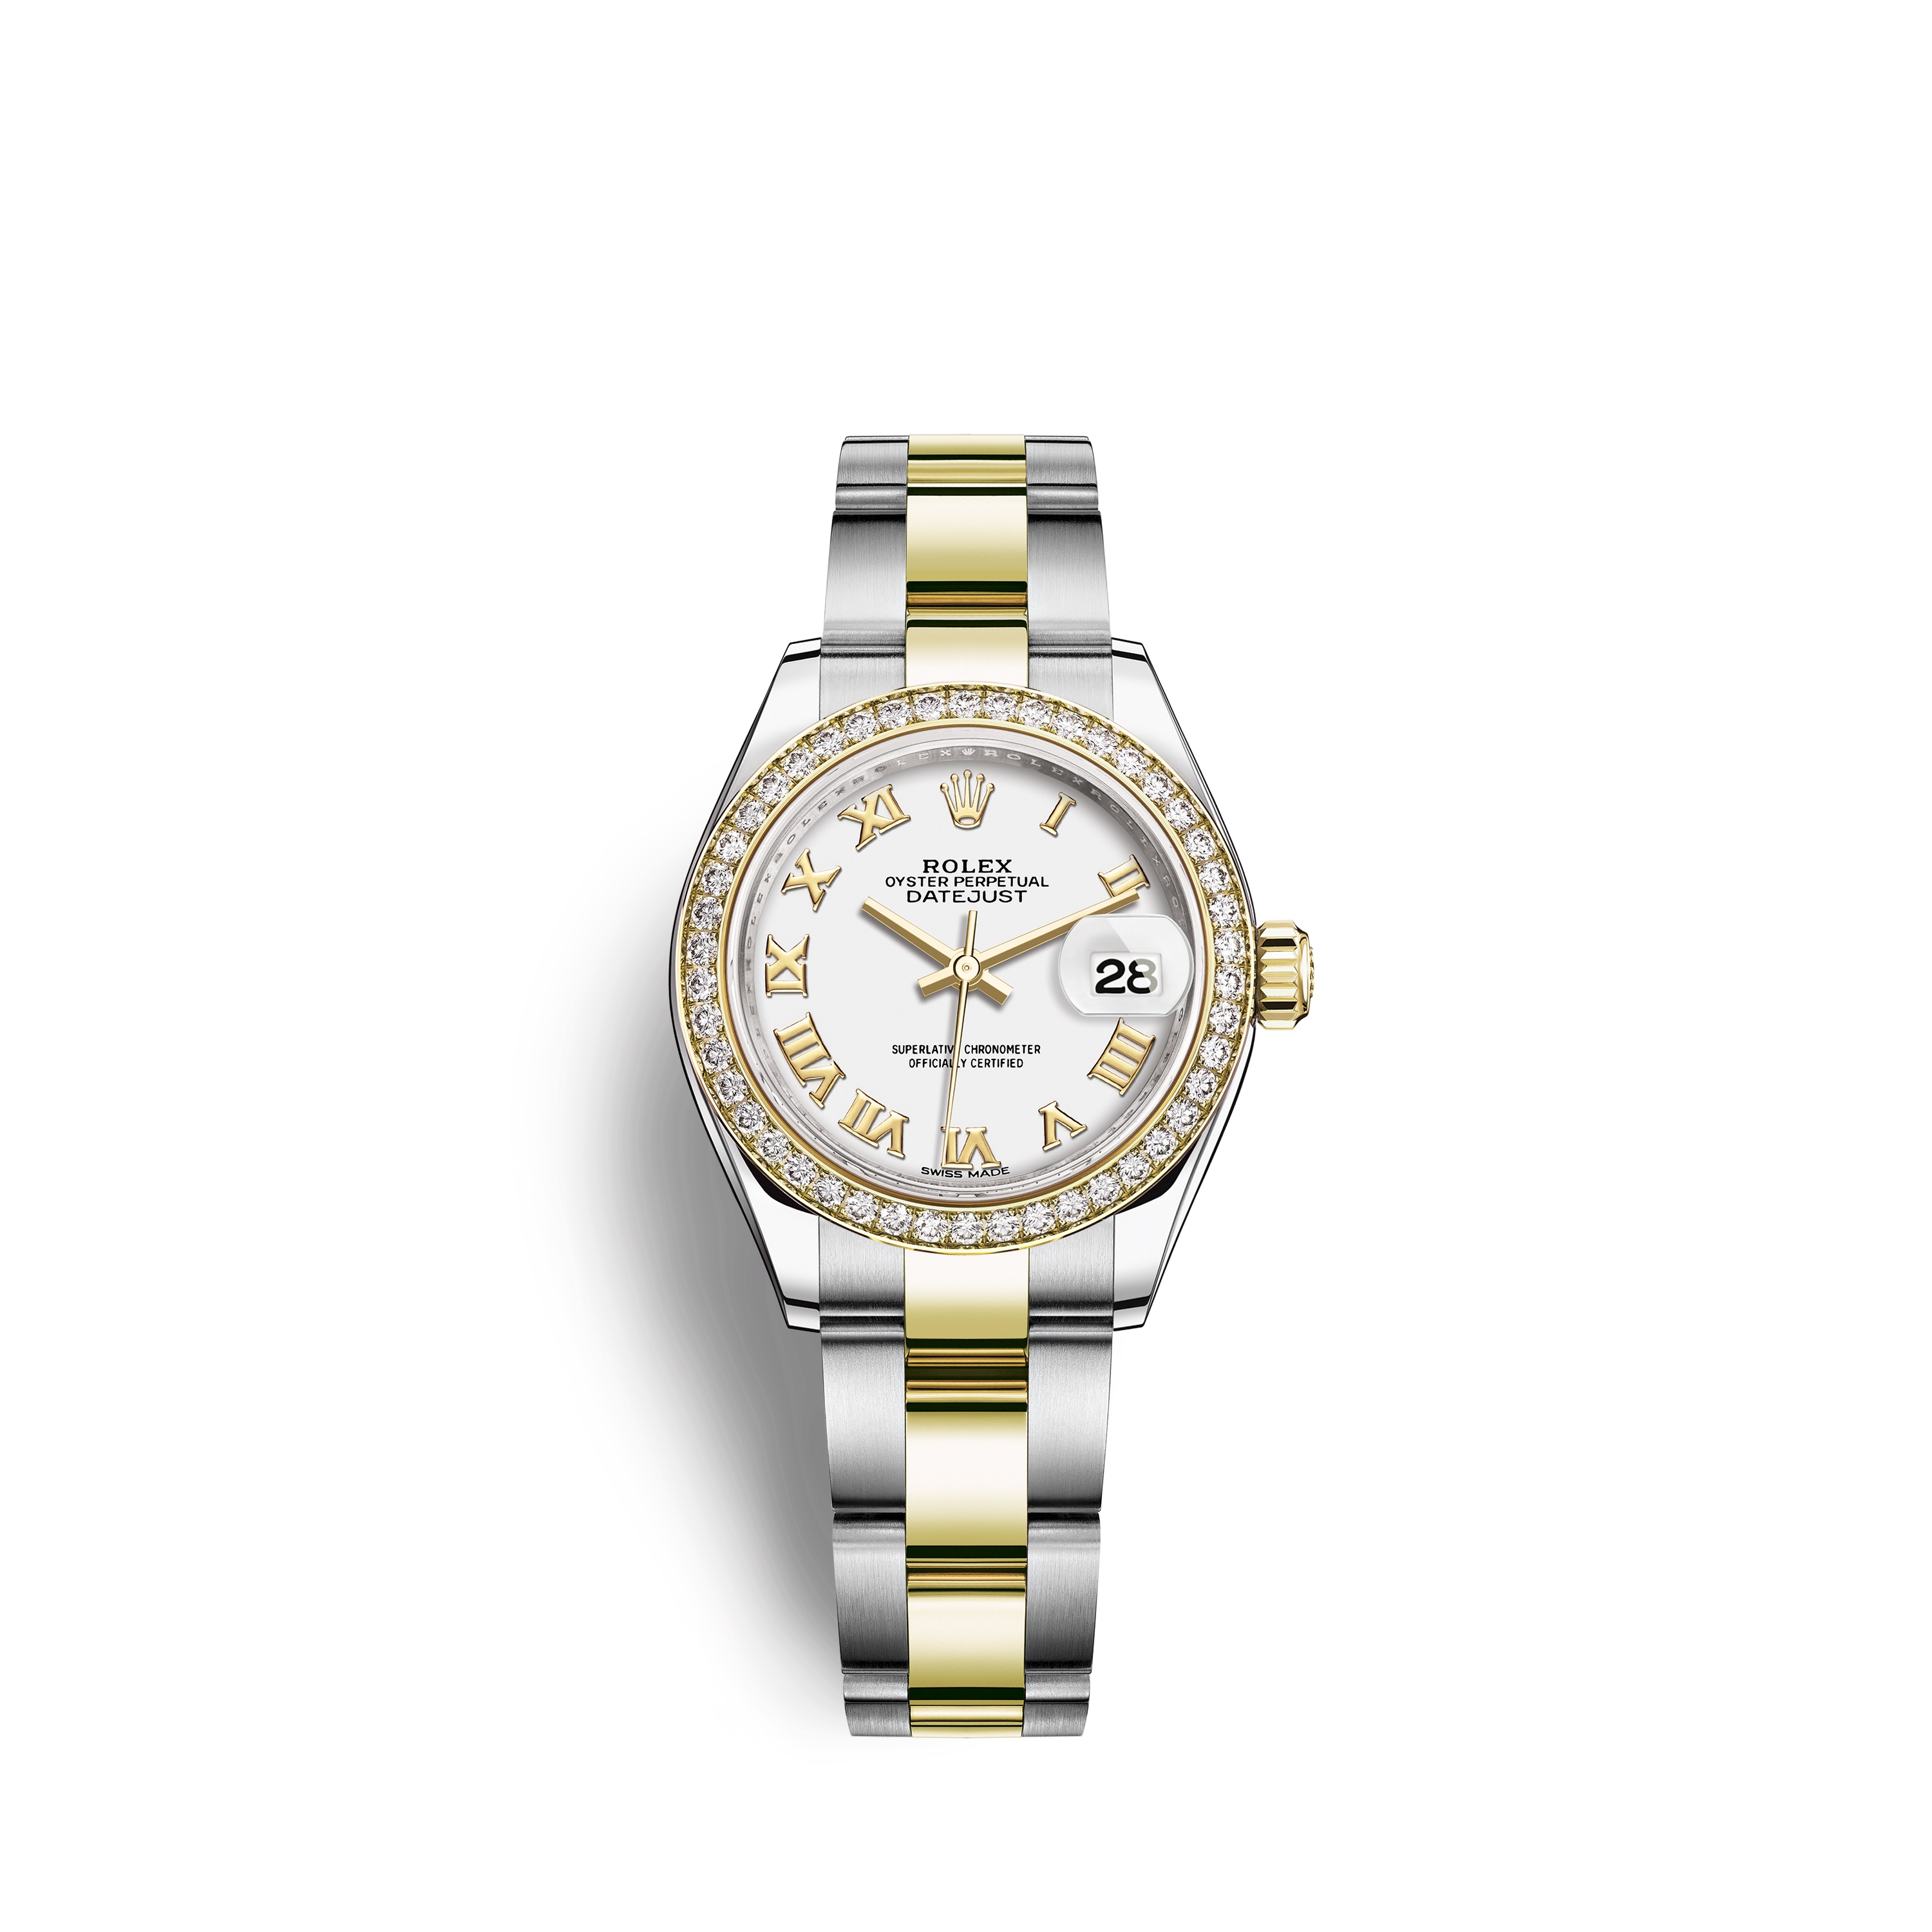 Lady-Datejust 28 279383RBR Gold & Diamonds Watch (White)